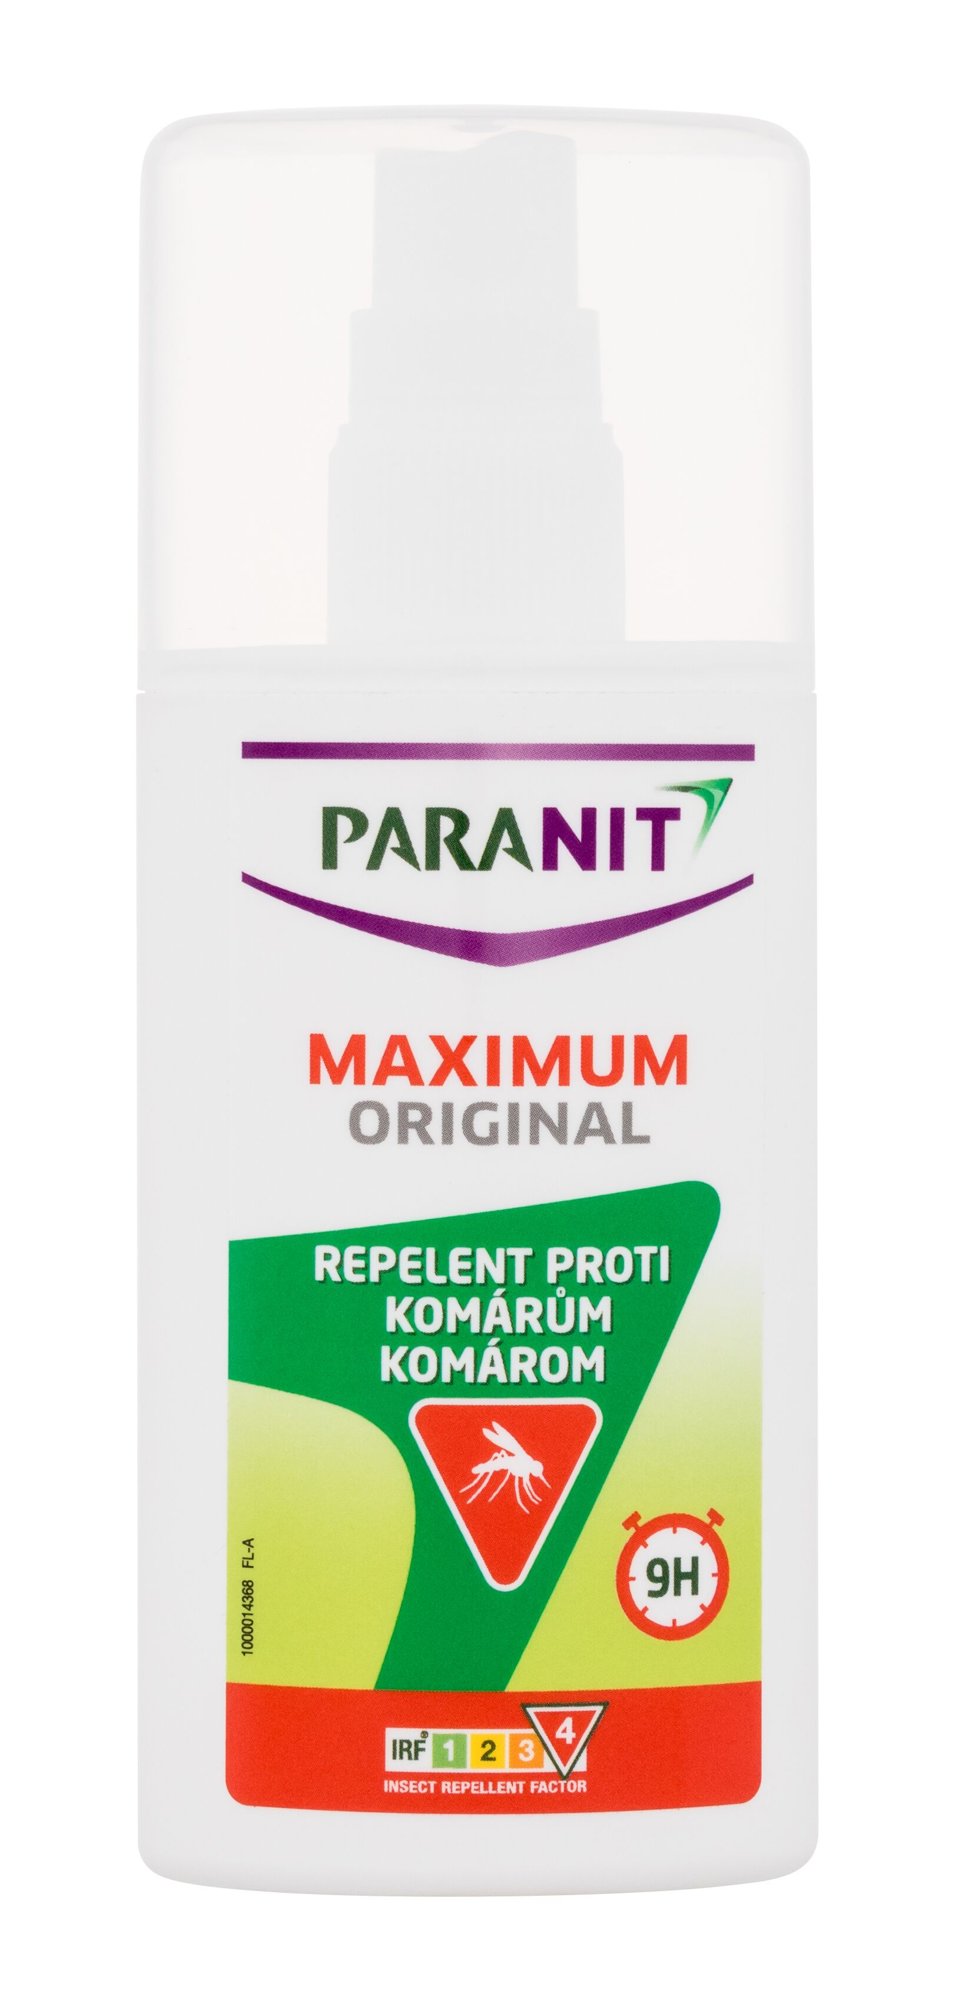 Paranit Maximum Original repelentas